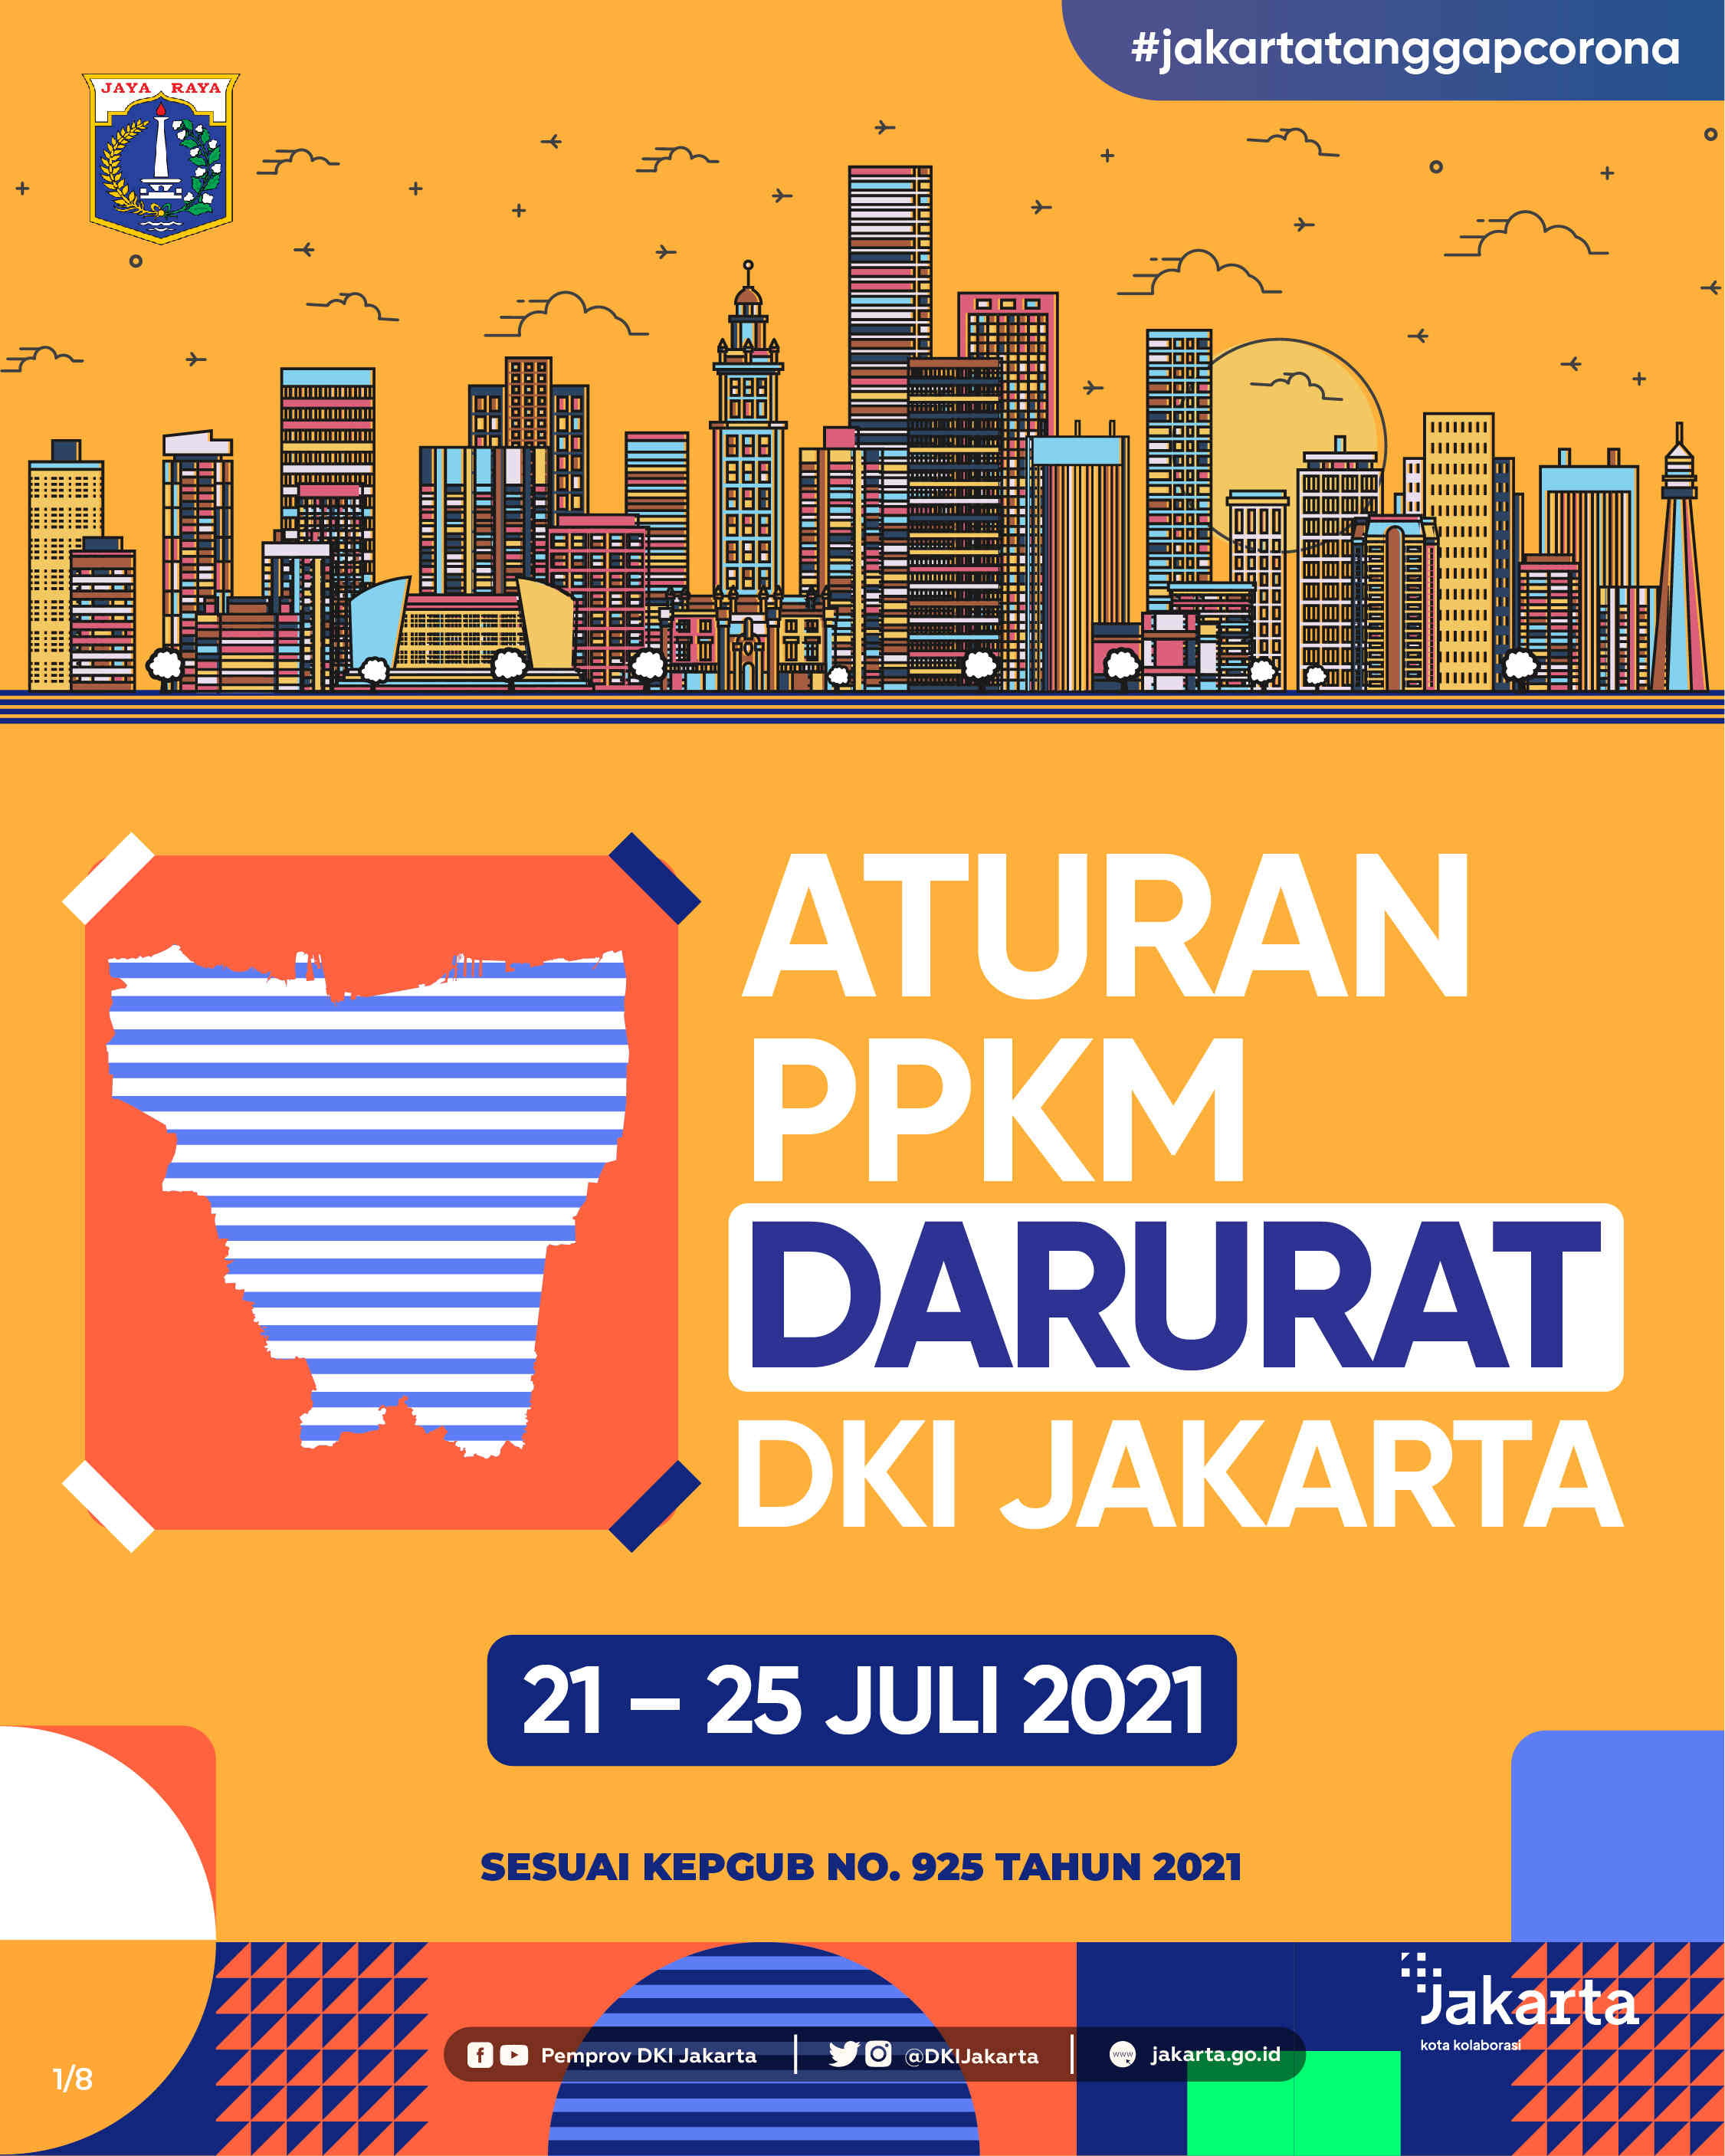 Aturan PPKM Darurat DKI Jakarta 21-25 Juli 2021